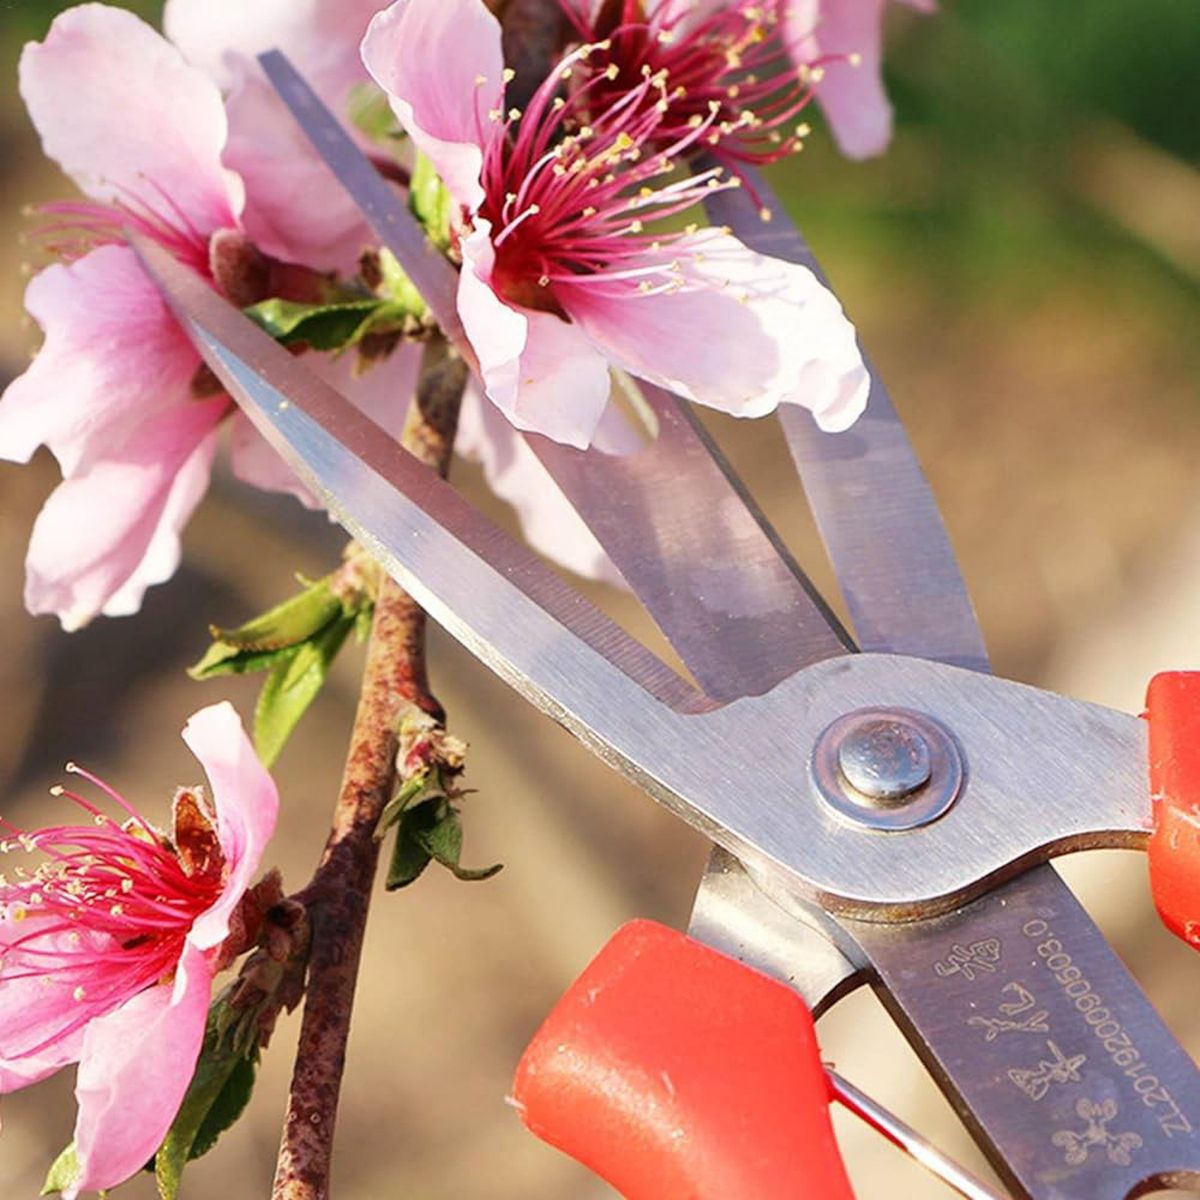 剪定鋏 耐久性 園芸用はさみ 果樹 庭木の剪定園芸用はさみ ステンレス刃